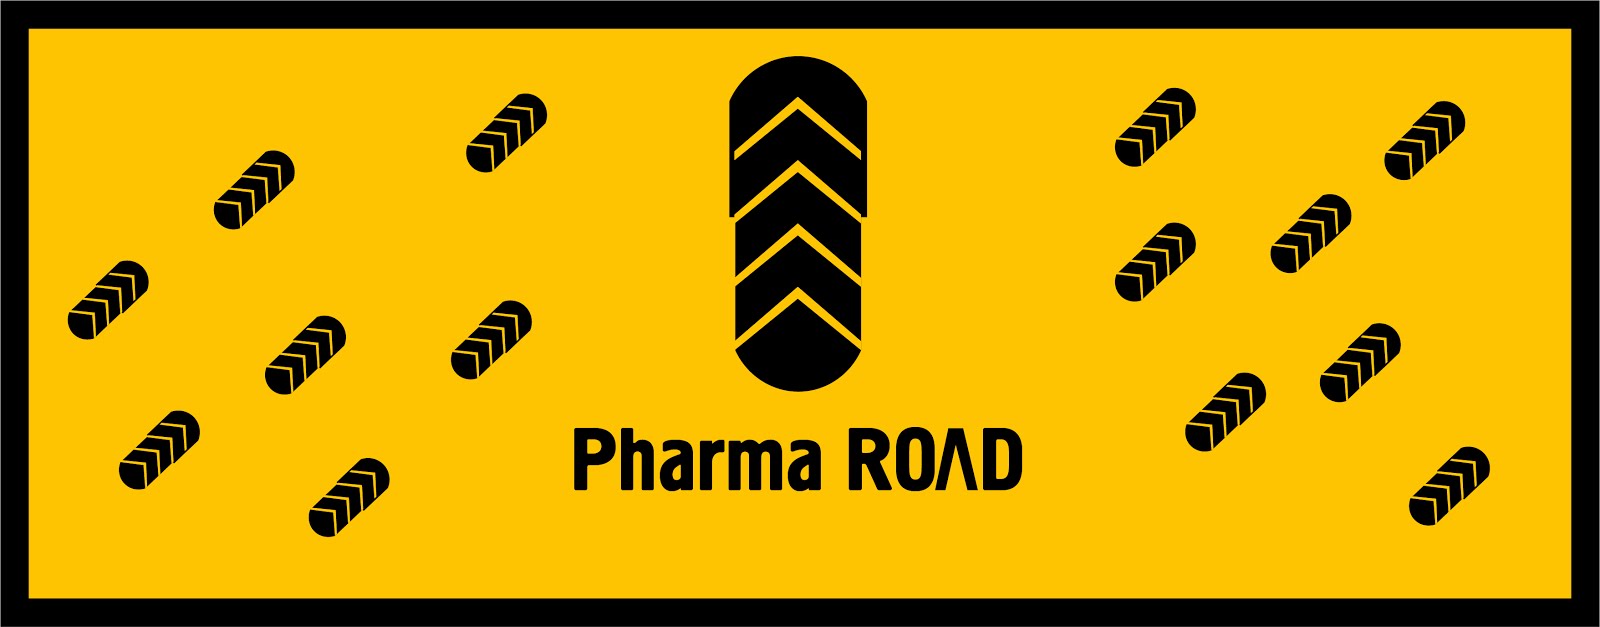 Pharma Road